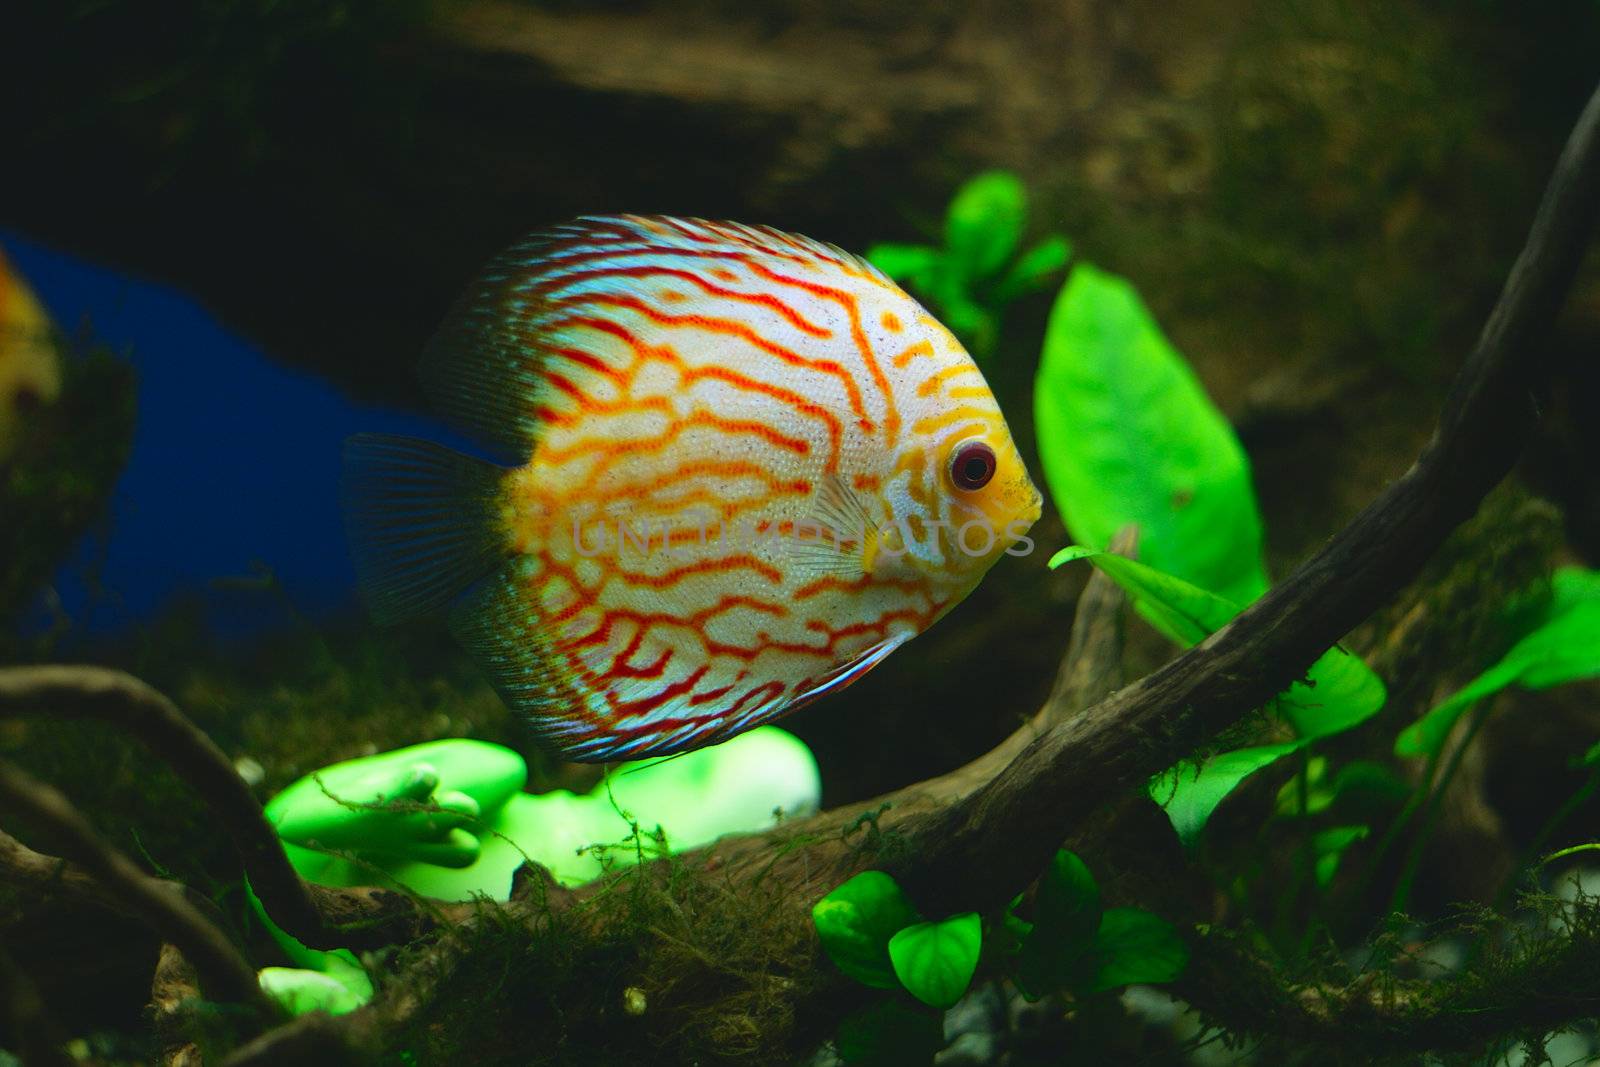 Orange discus fish in aquarium (close-up photo)